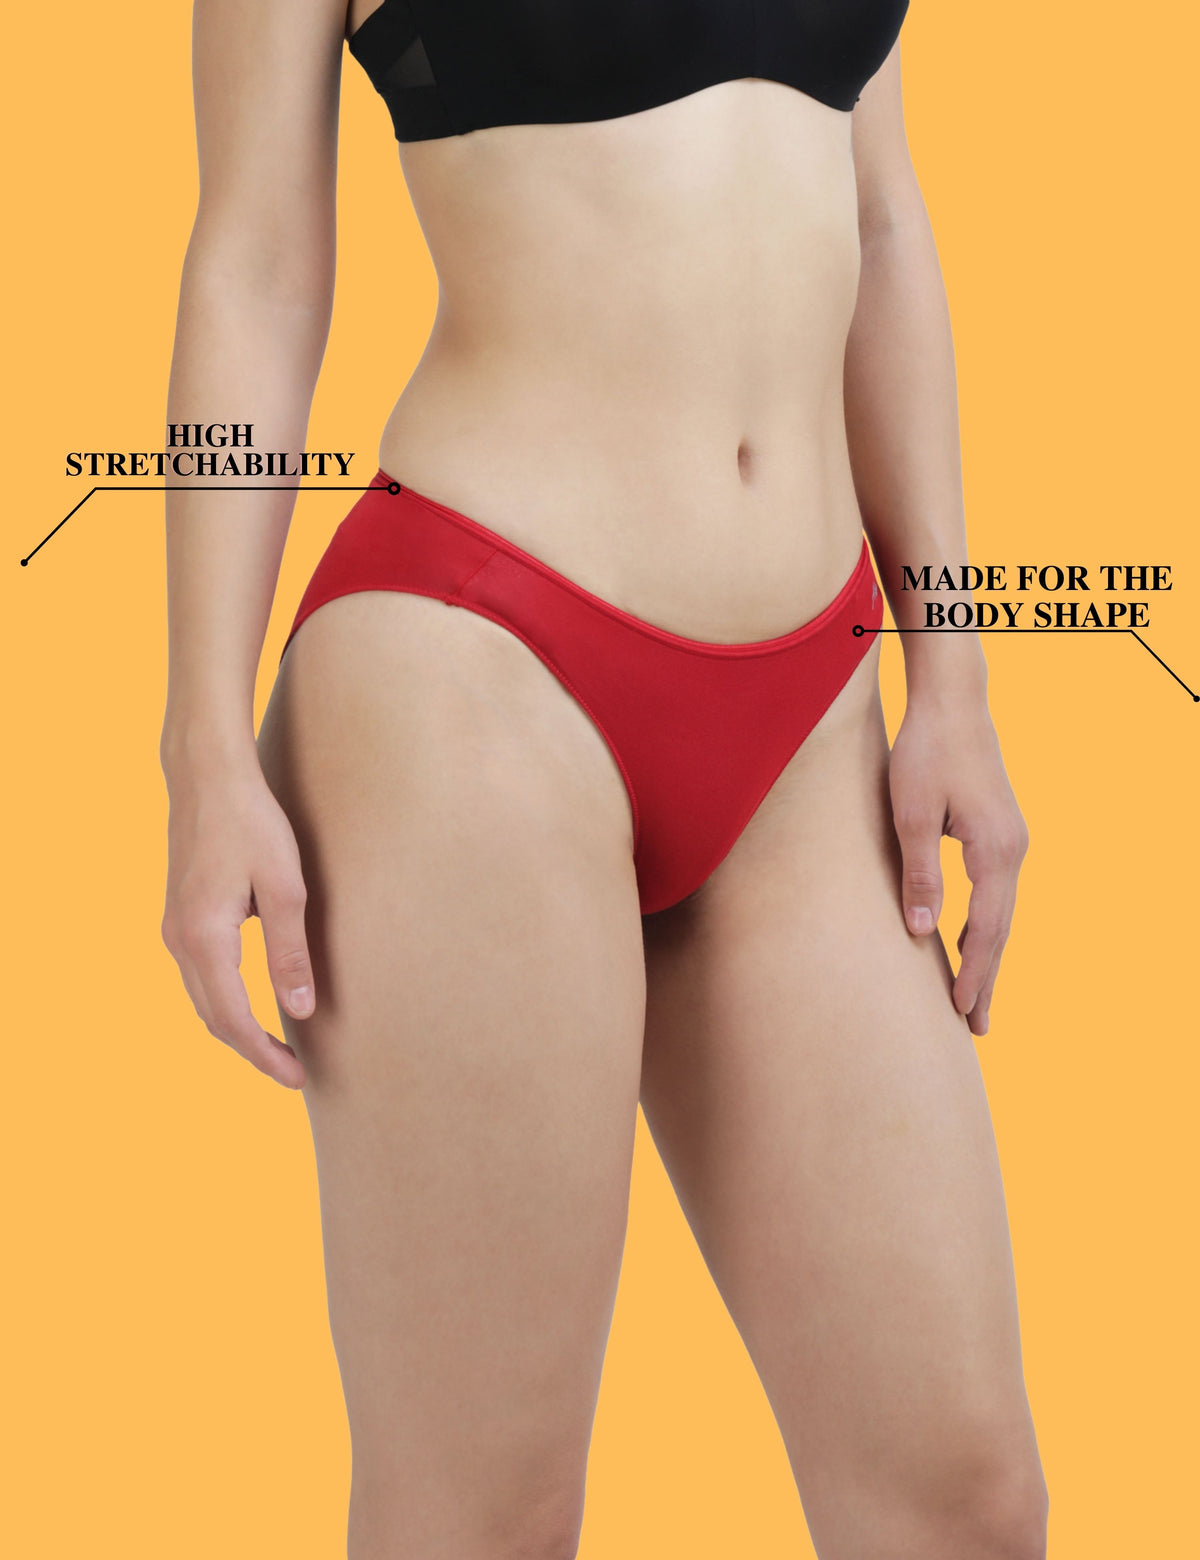 AshleyandAlvis Bamboo Micro Modal antibacterial- Bikini panties SR